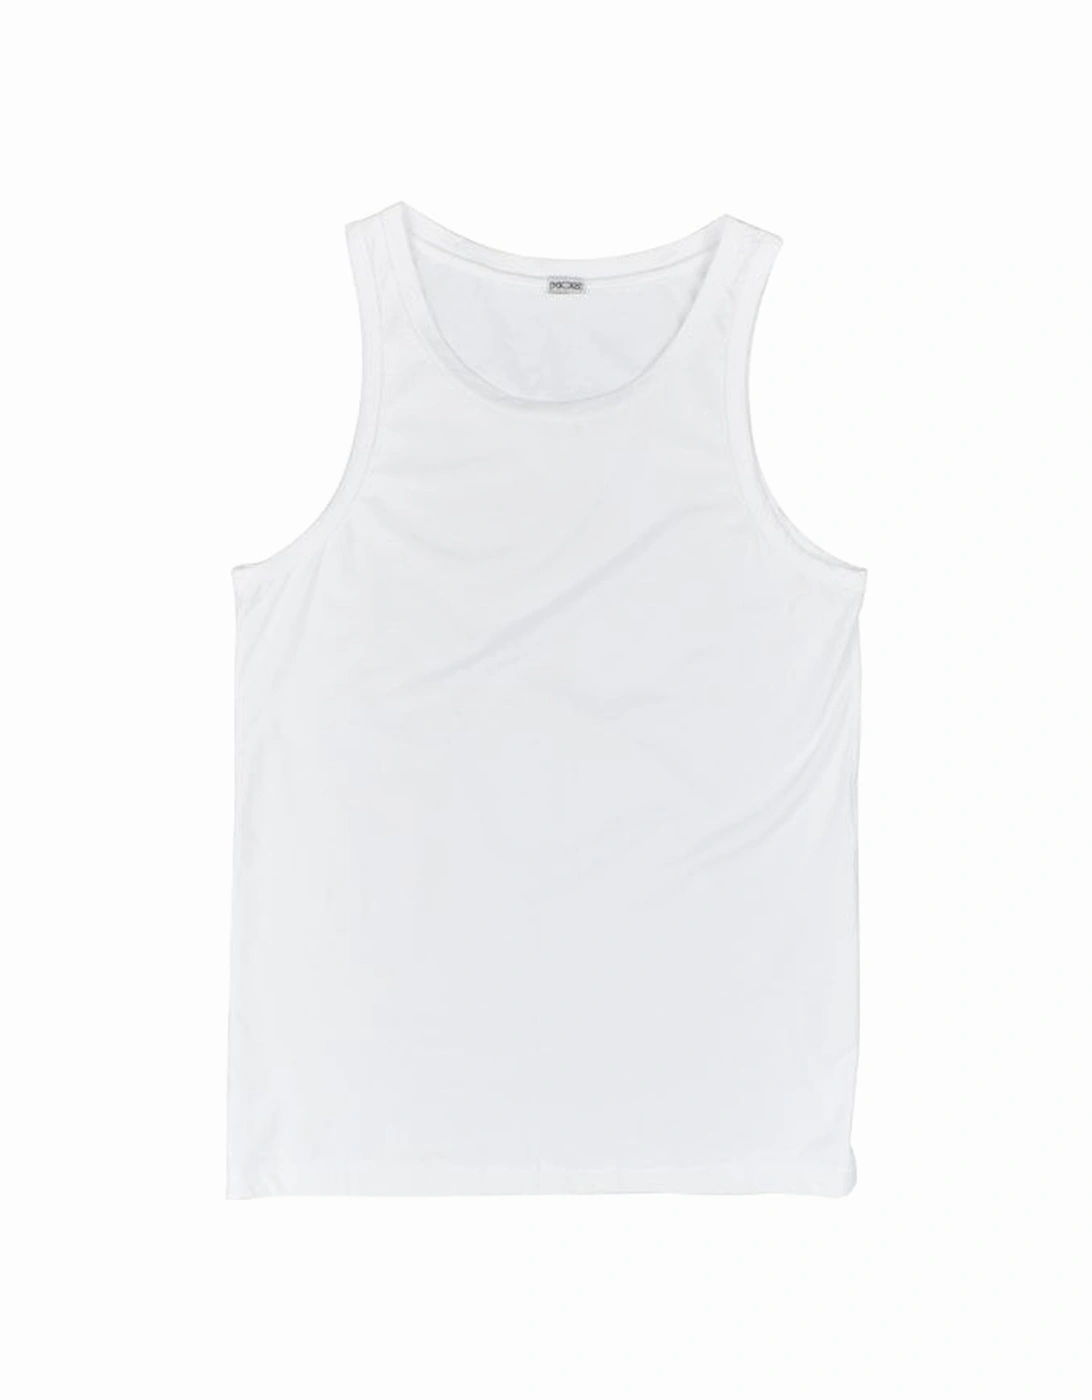 Supreme Cotton Tank Top Vest, White, 4 of 3